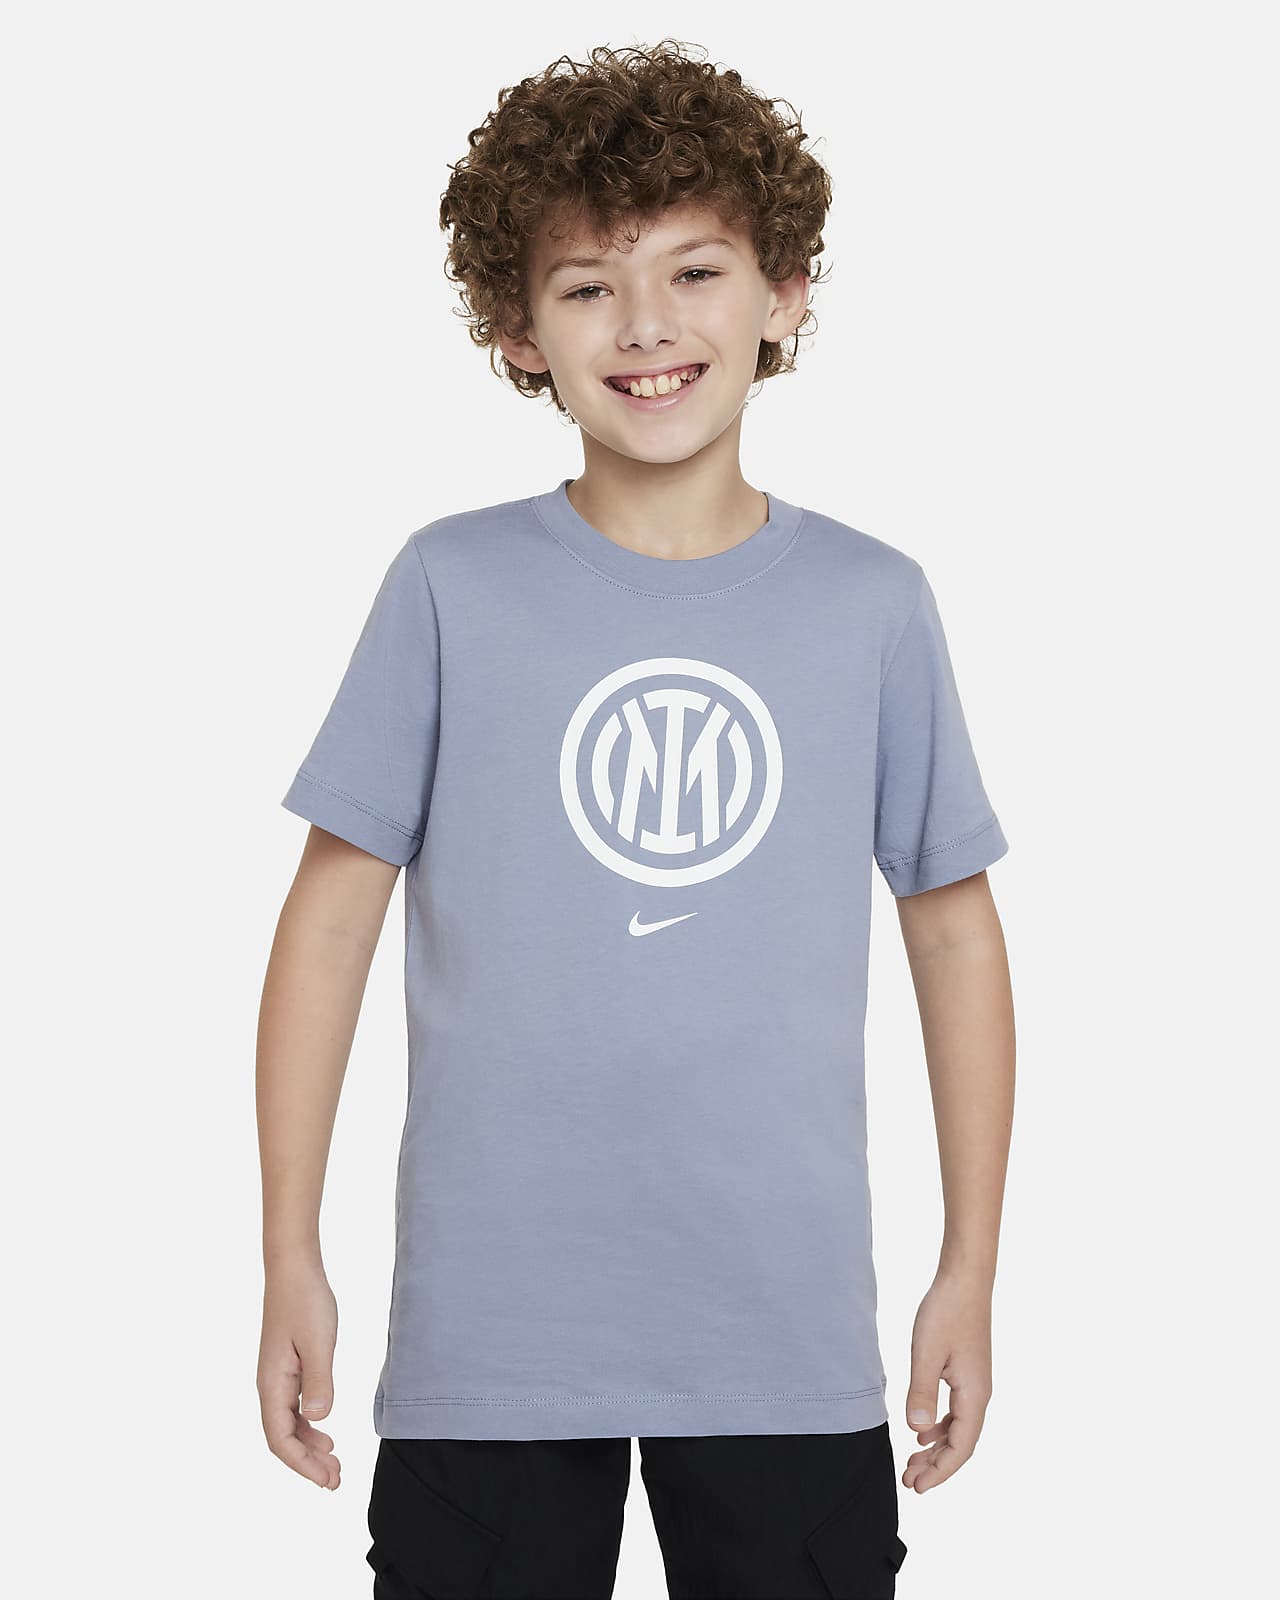 Inter Milan Crest Older Kids' Nike T-Shirt